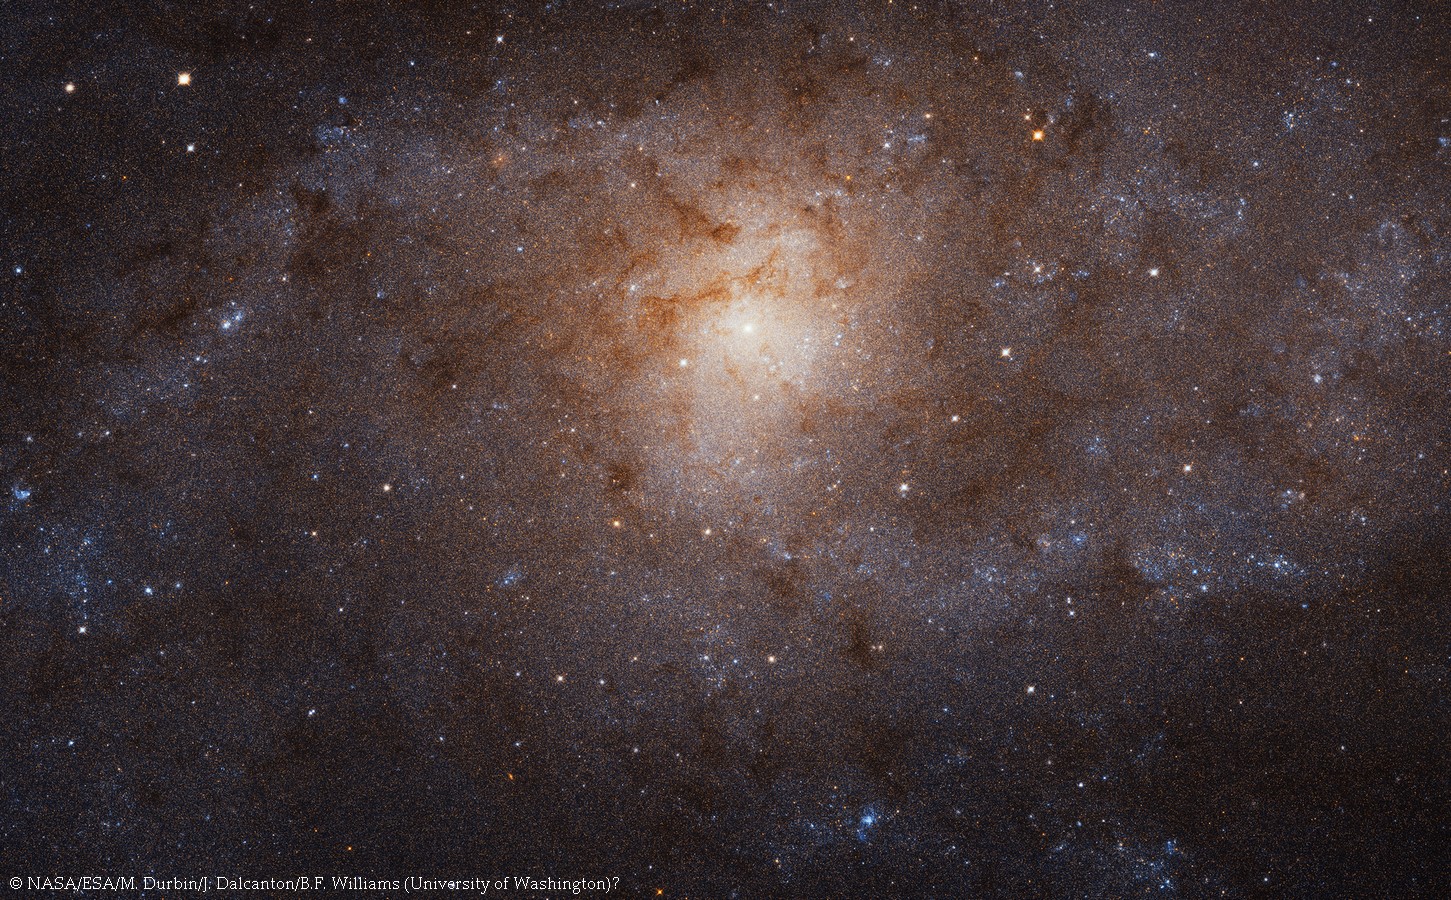 La galaxie du Triangle (Messier 33) en haute résolution